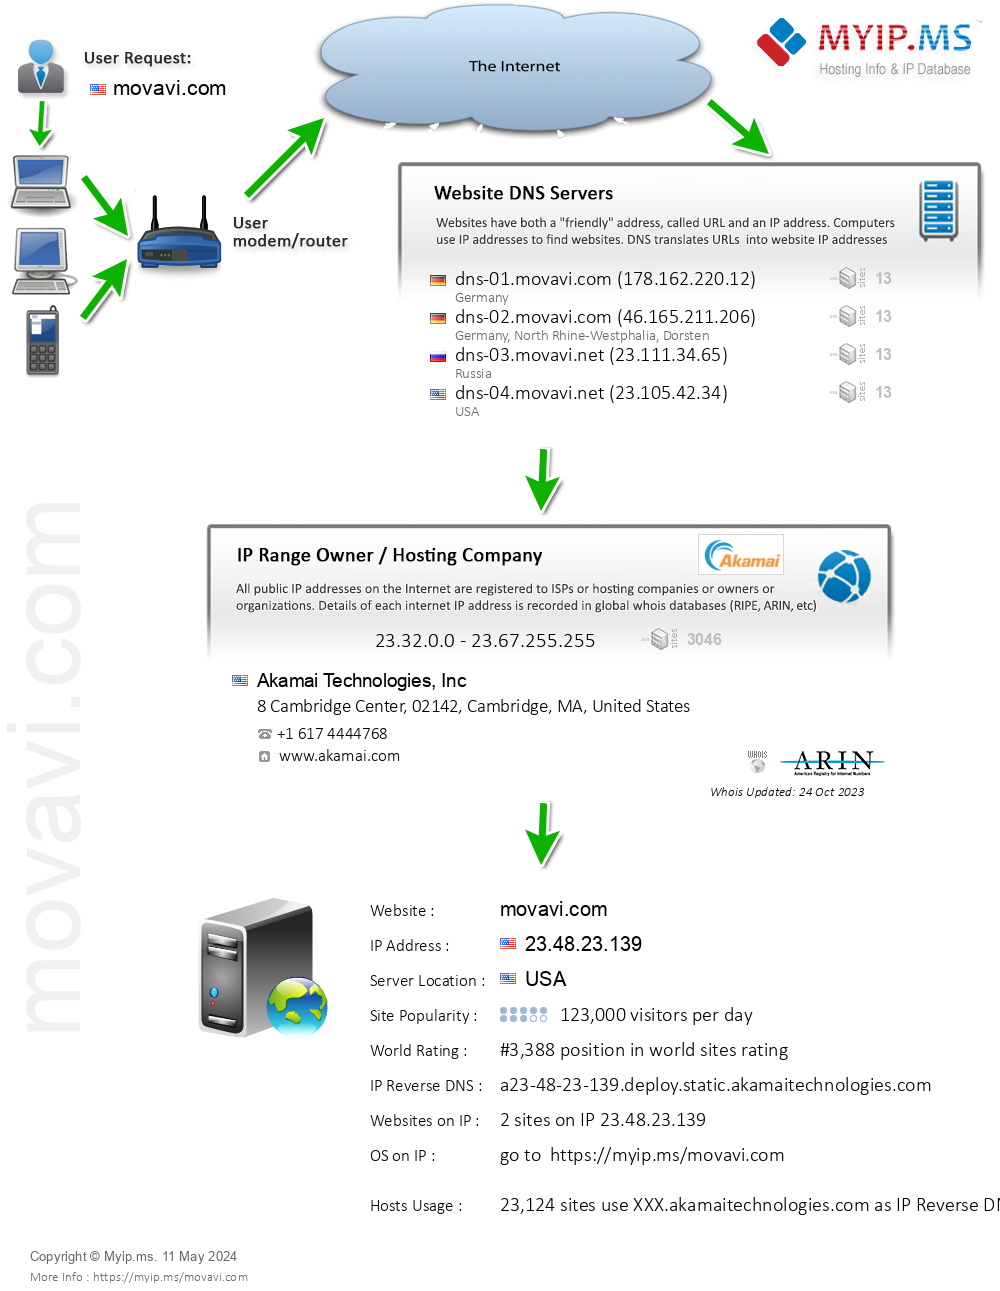 Movavi.com - Website Hosting Visual IP Diagram